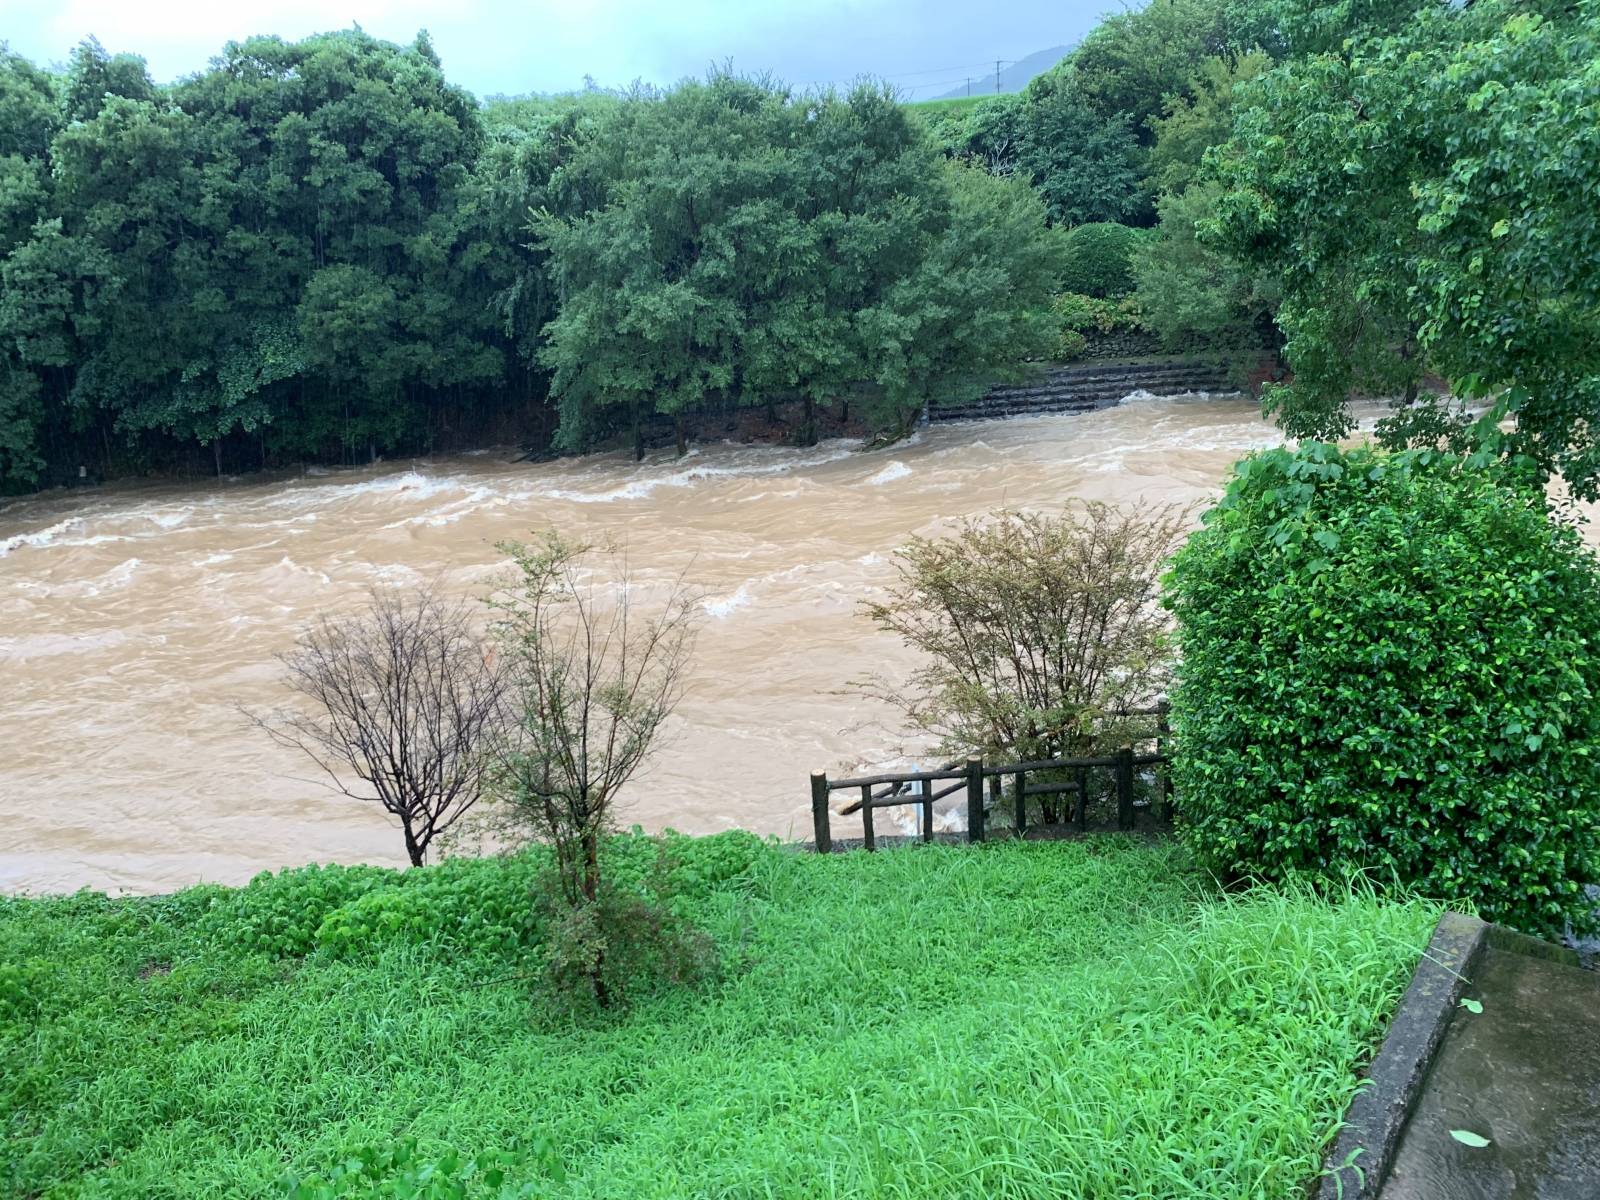 Floods in Ureshino city